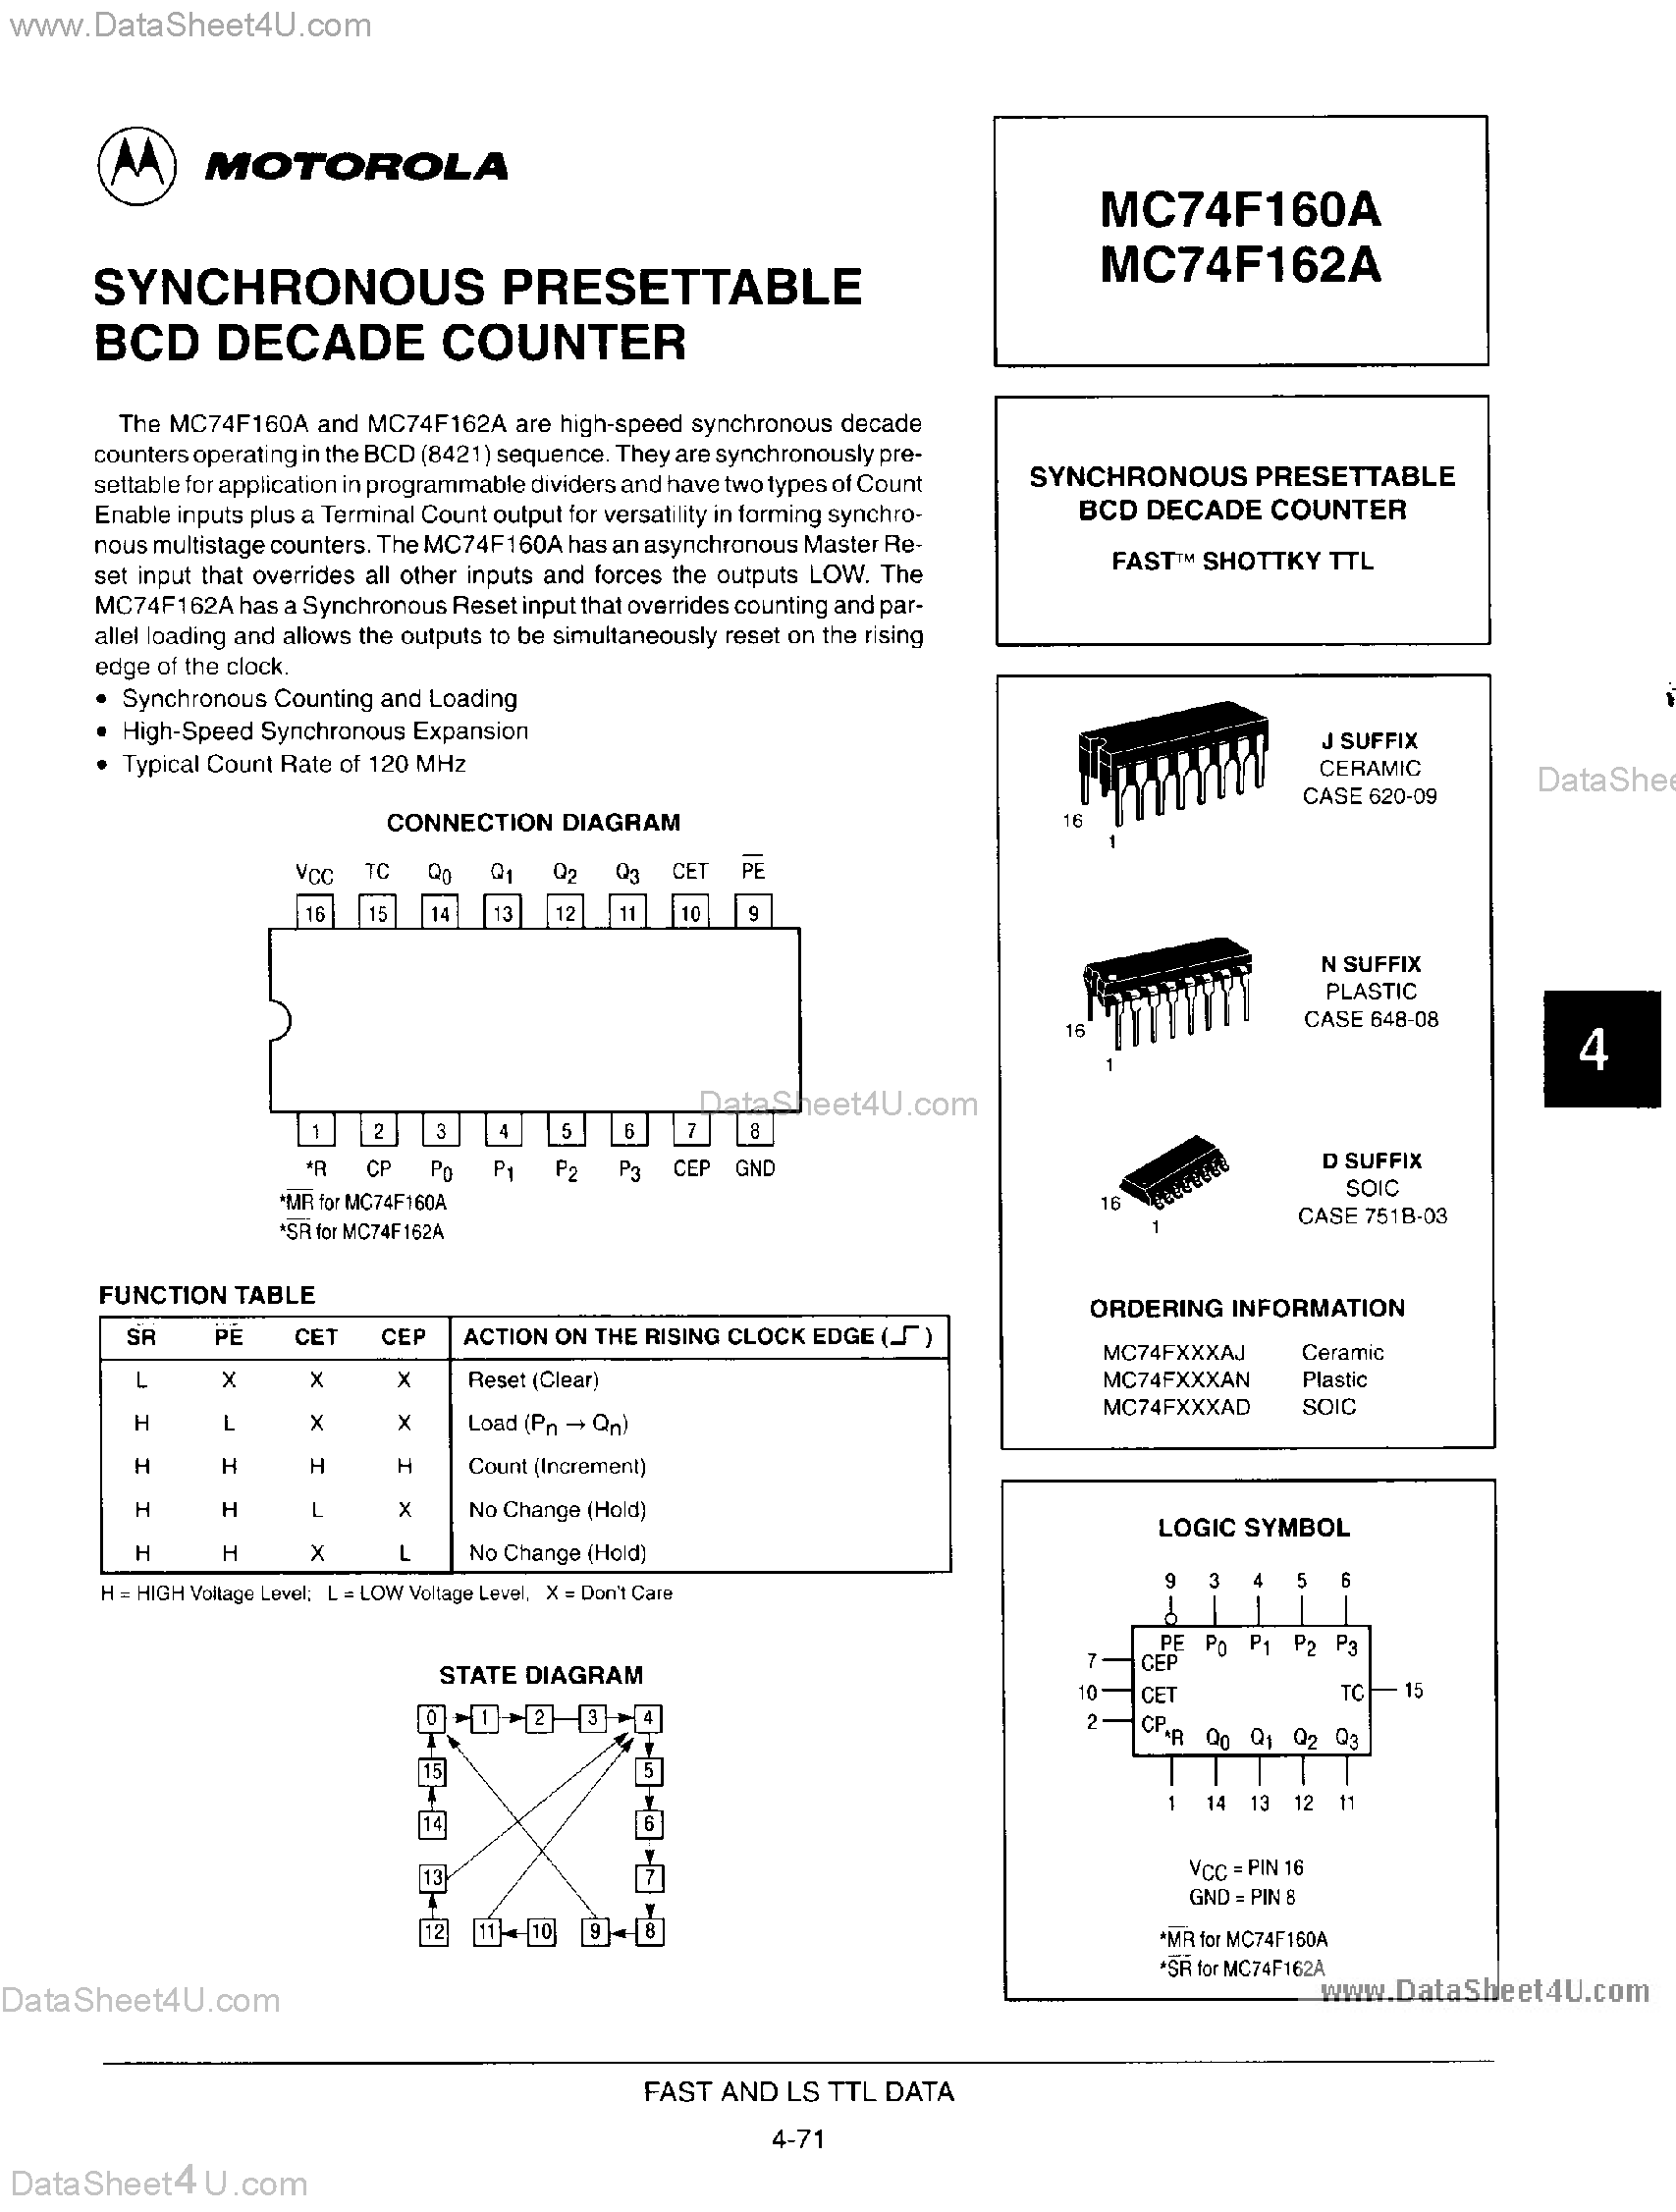 Даташит MC54F160A - (MC54F160A / MC54F162A) Synchronous Presettable BCD Decade Counter страница 1